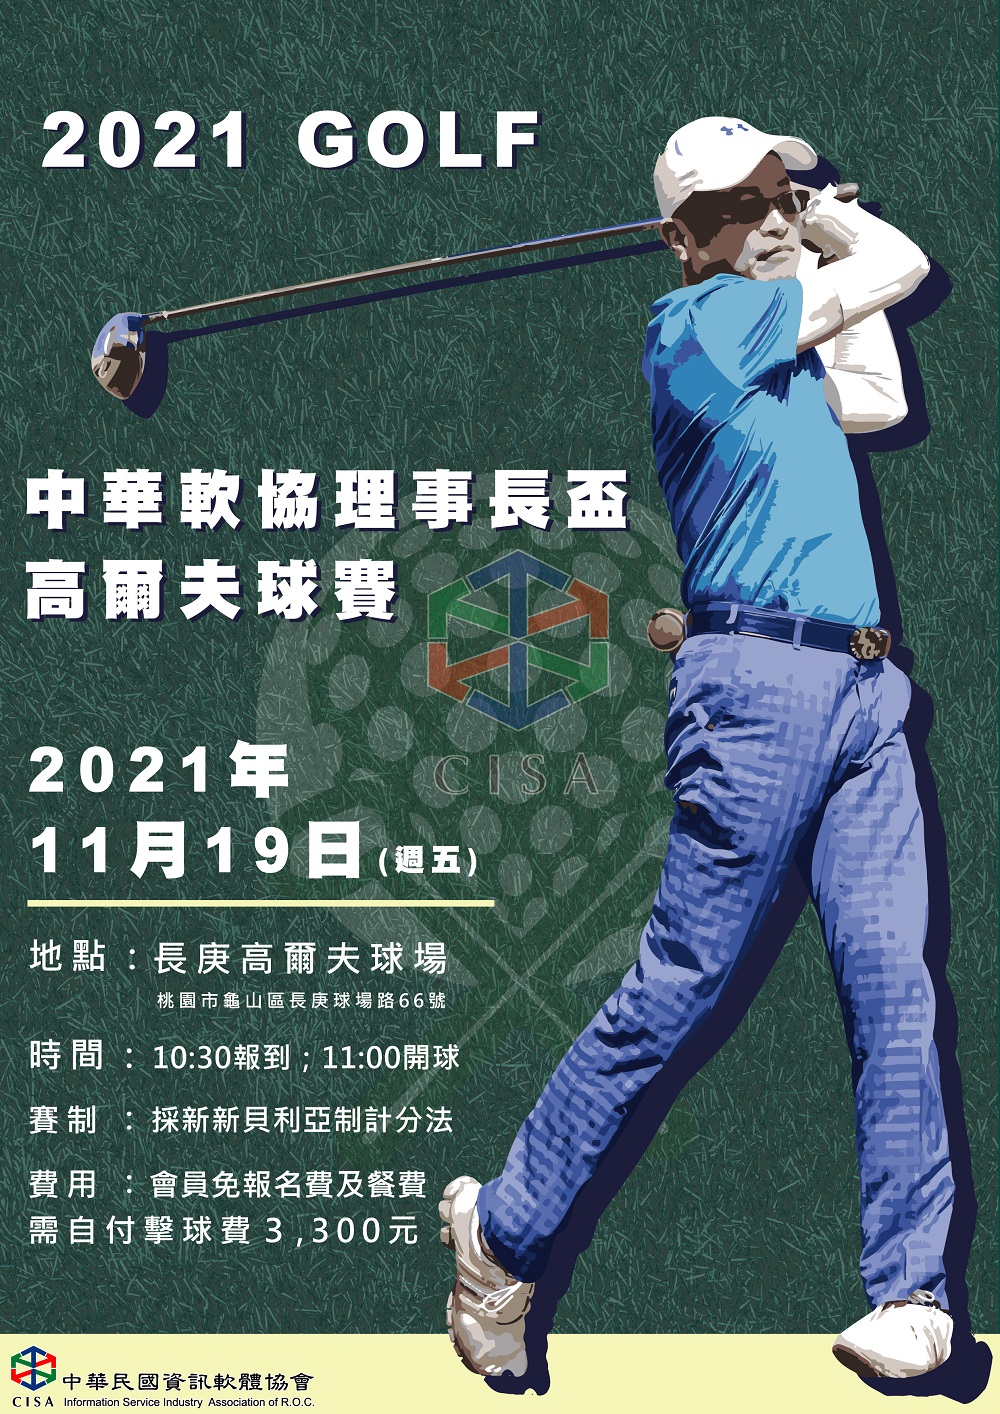 2021理事長盃高爾夫球賽報名網站